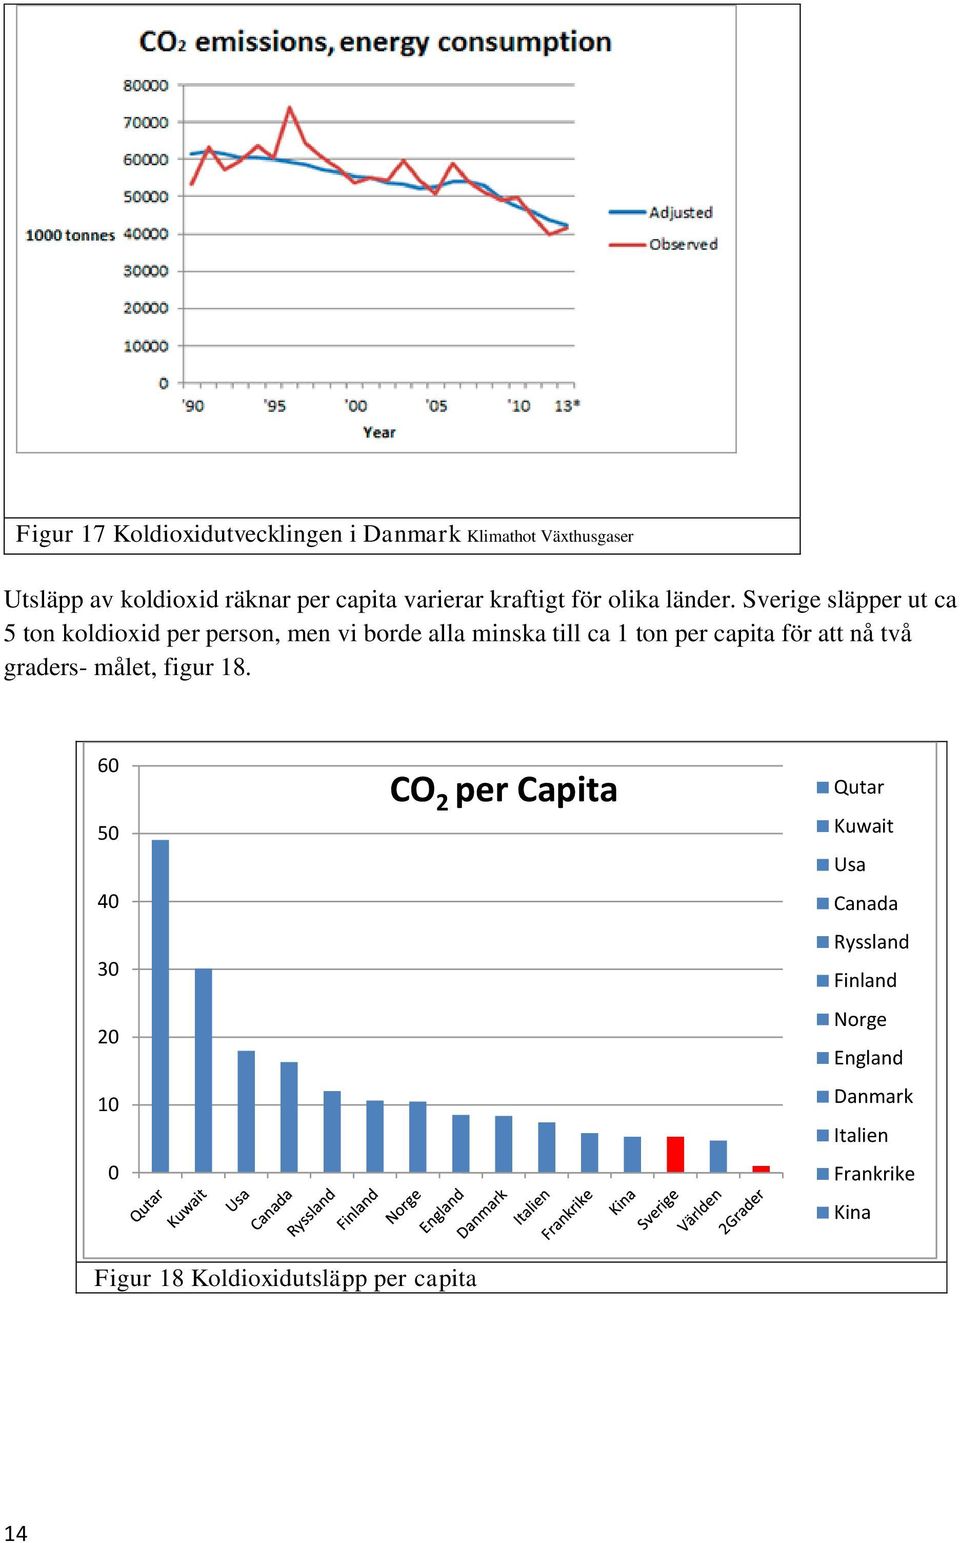 Sverige släpper ut ca 5 ton koldioxid per person, men vi borde alla minska till ca 1 ton per capita för att nå